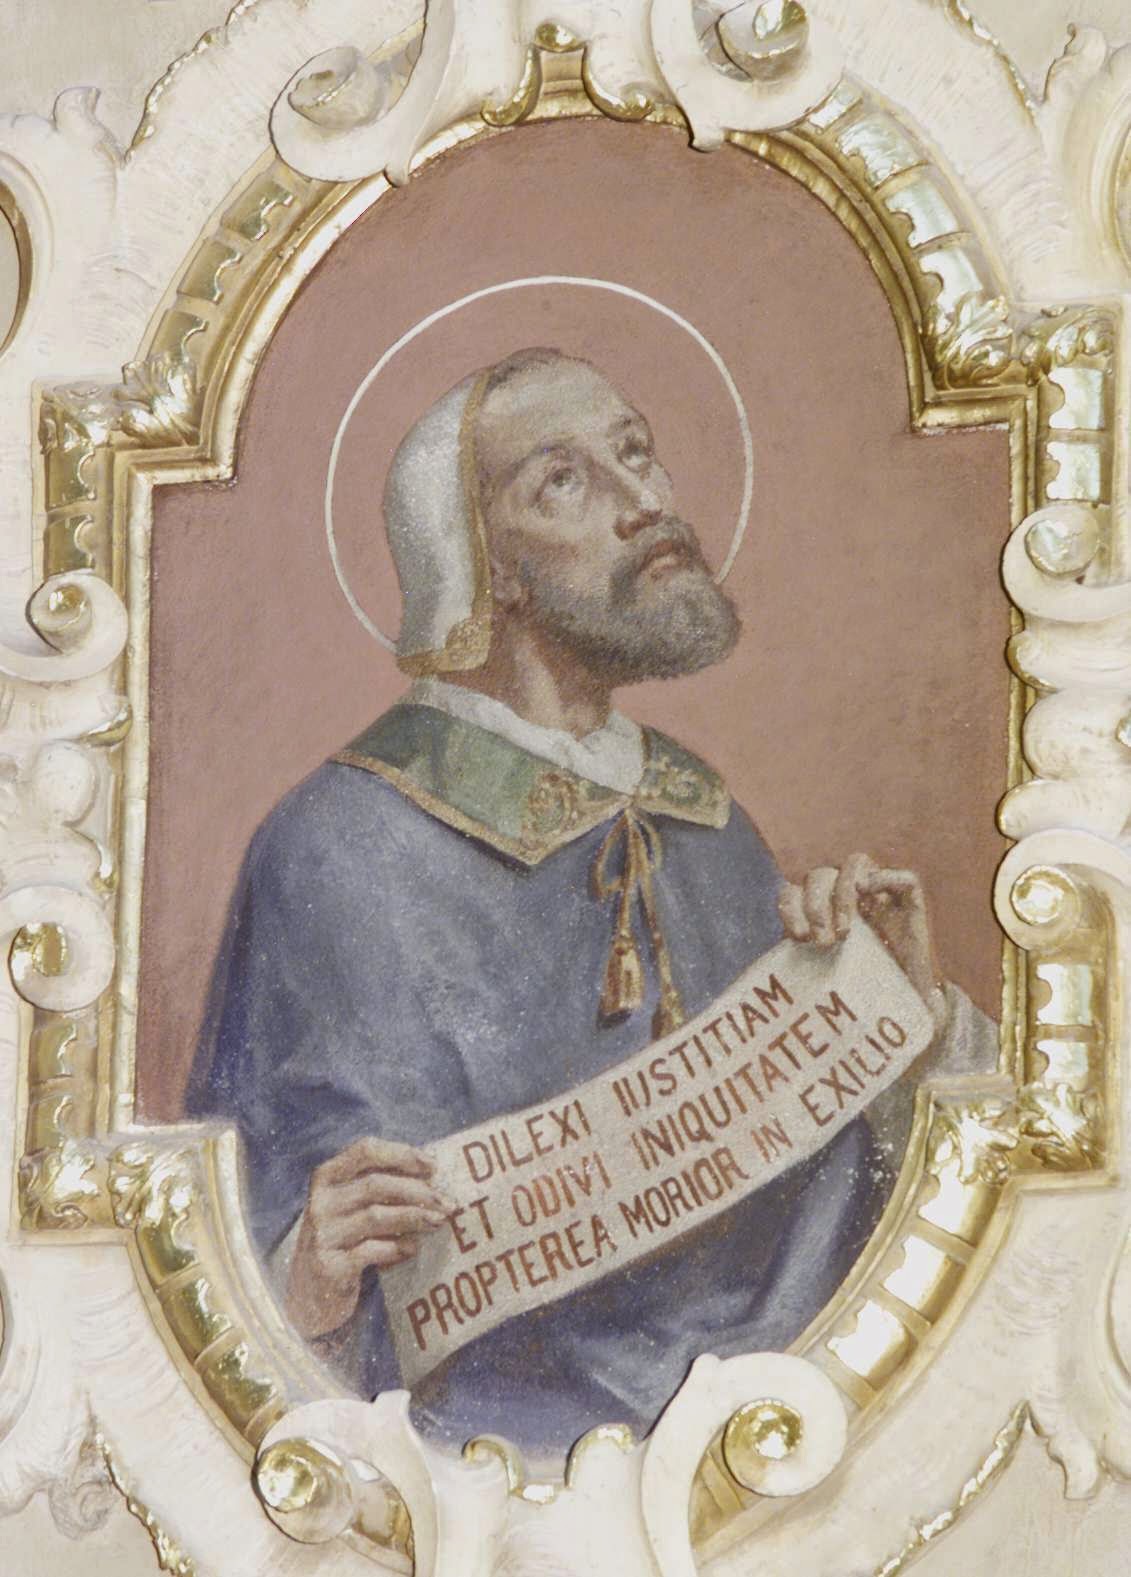 w. Grzegorz VII, Papie. Dilexi iustitiam et odivi iniquitatem, propterea morior in exilio.